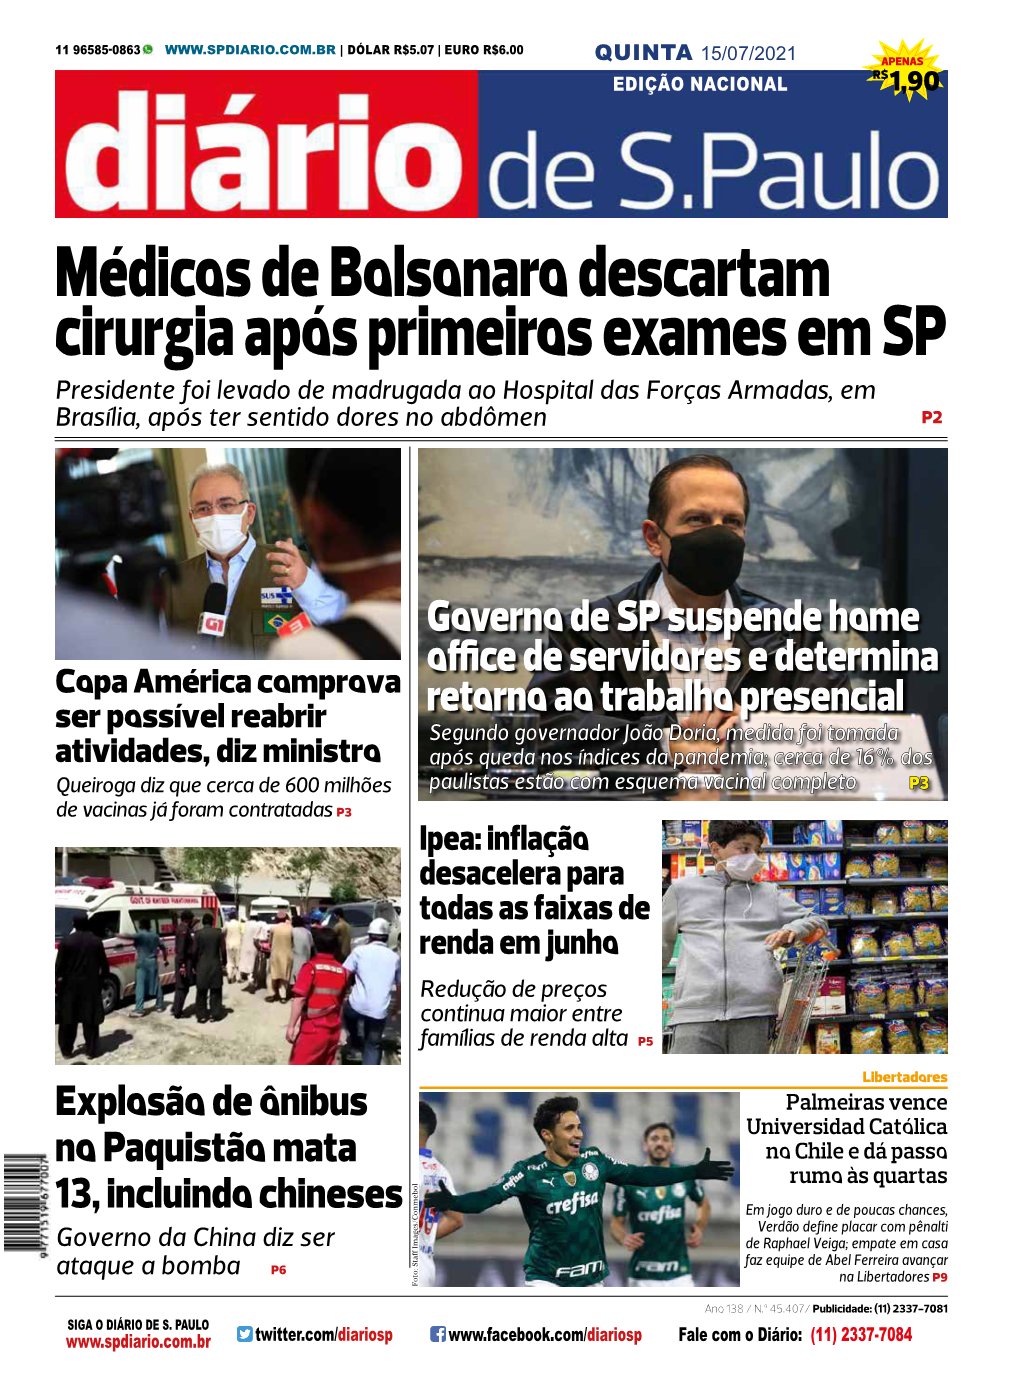 Médicos De Bolsonaro Descartam Cirurgia Após Primeiros Exames Em